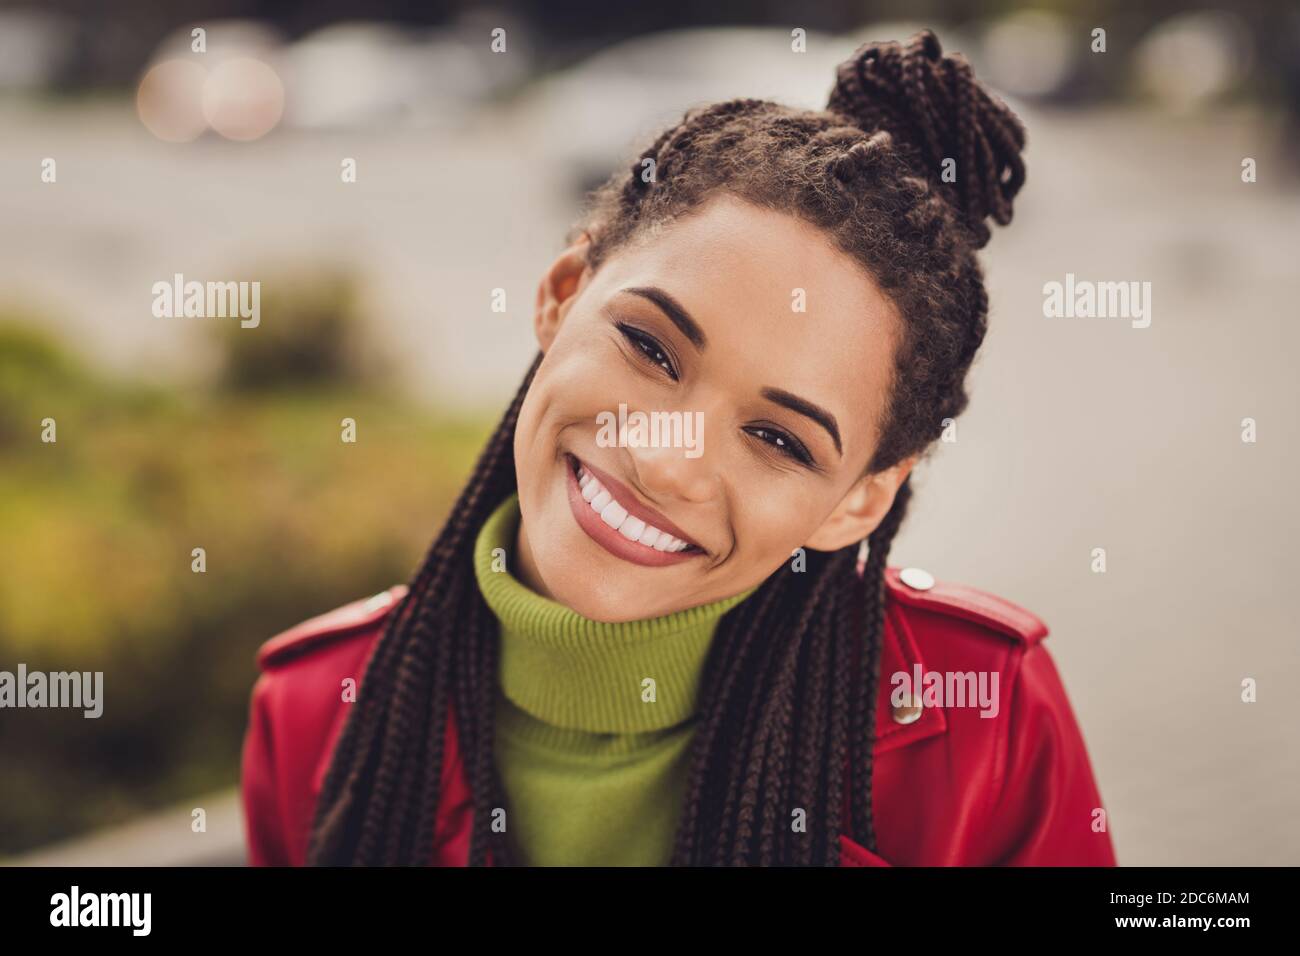 Photo de jeune femme afro-américaine de cheveux bruns attrayante et gaie joyeux sourire positif profitez de la marche libre Banque D'Images